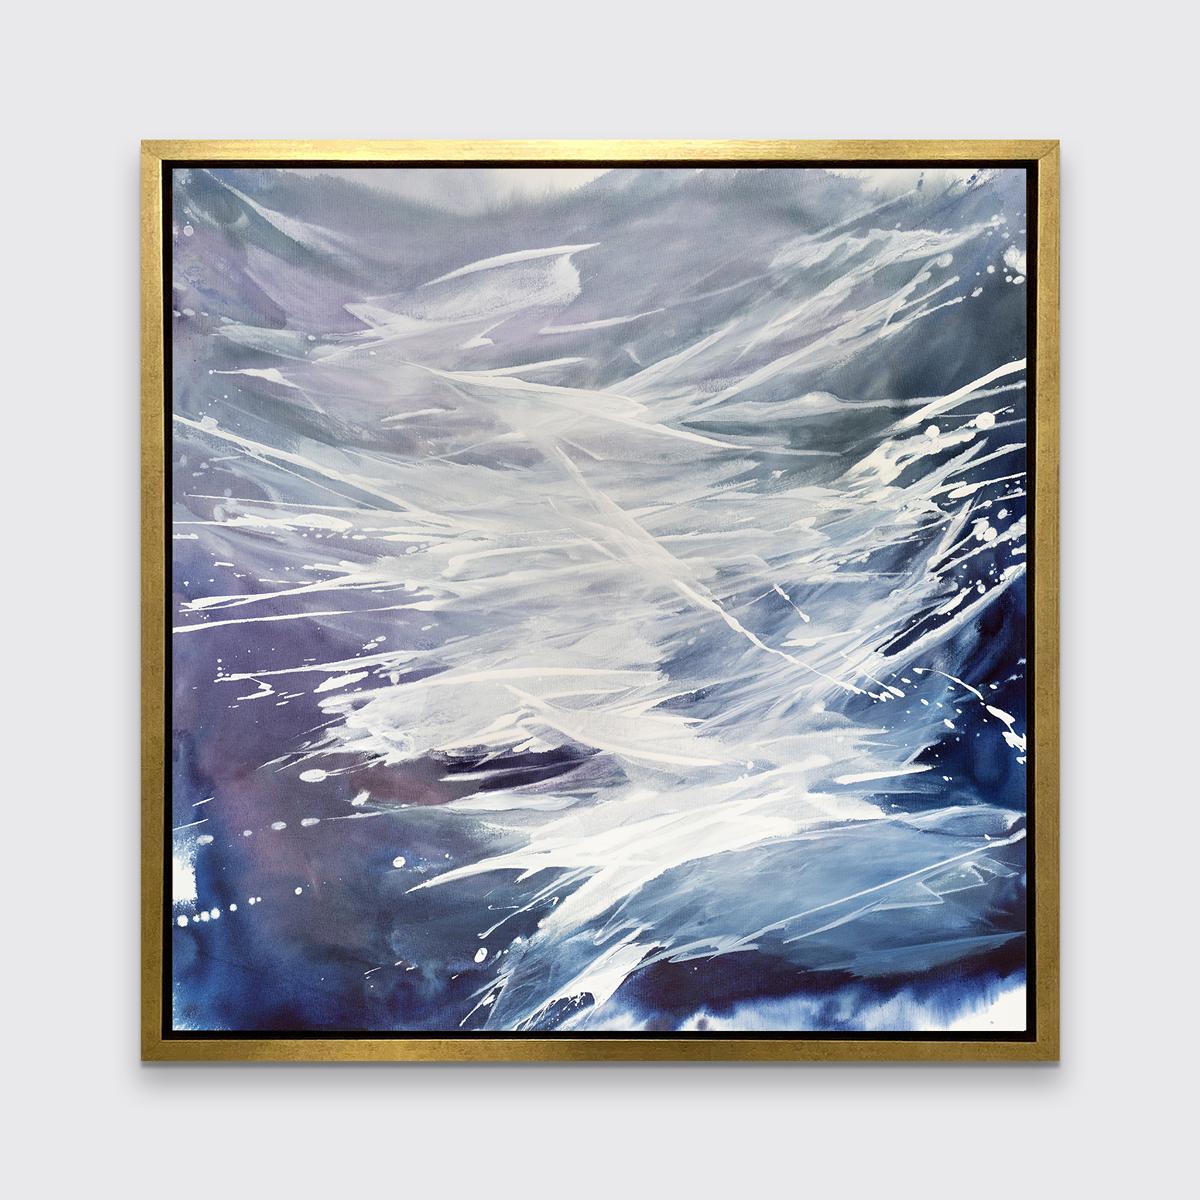 Cette impression abstraite contemporaine en édition limitée de Teodora Guererra présente une palette froide, avec des couches de lavis de bleu, de gris, de violet et de blanc appliqués en gestes amples sur toute la pièce.

Cette impression giclée en